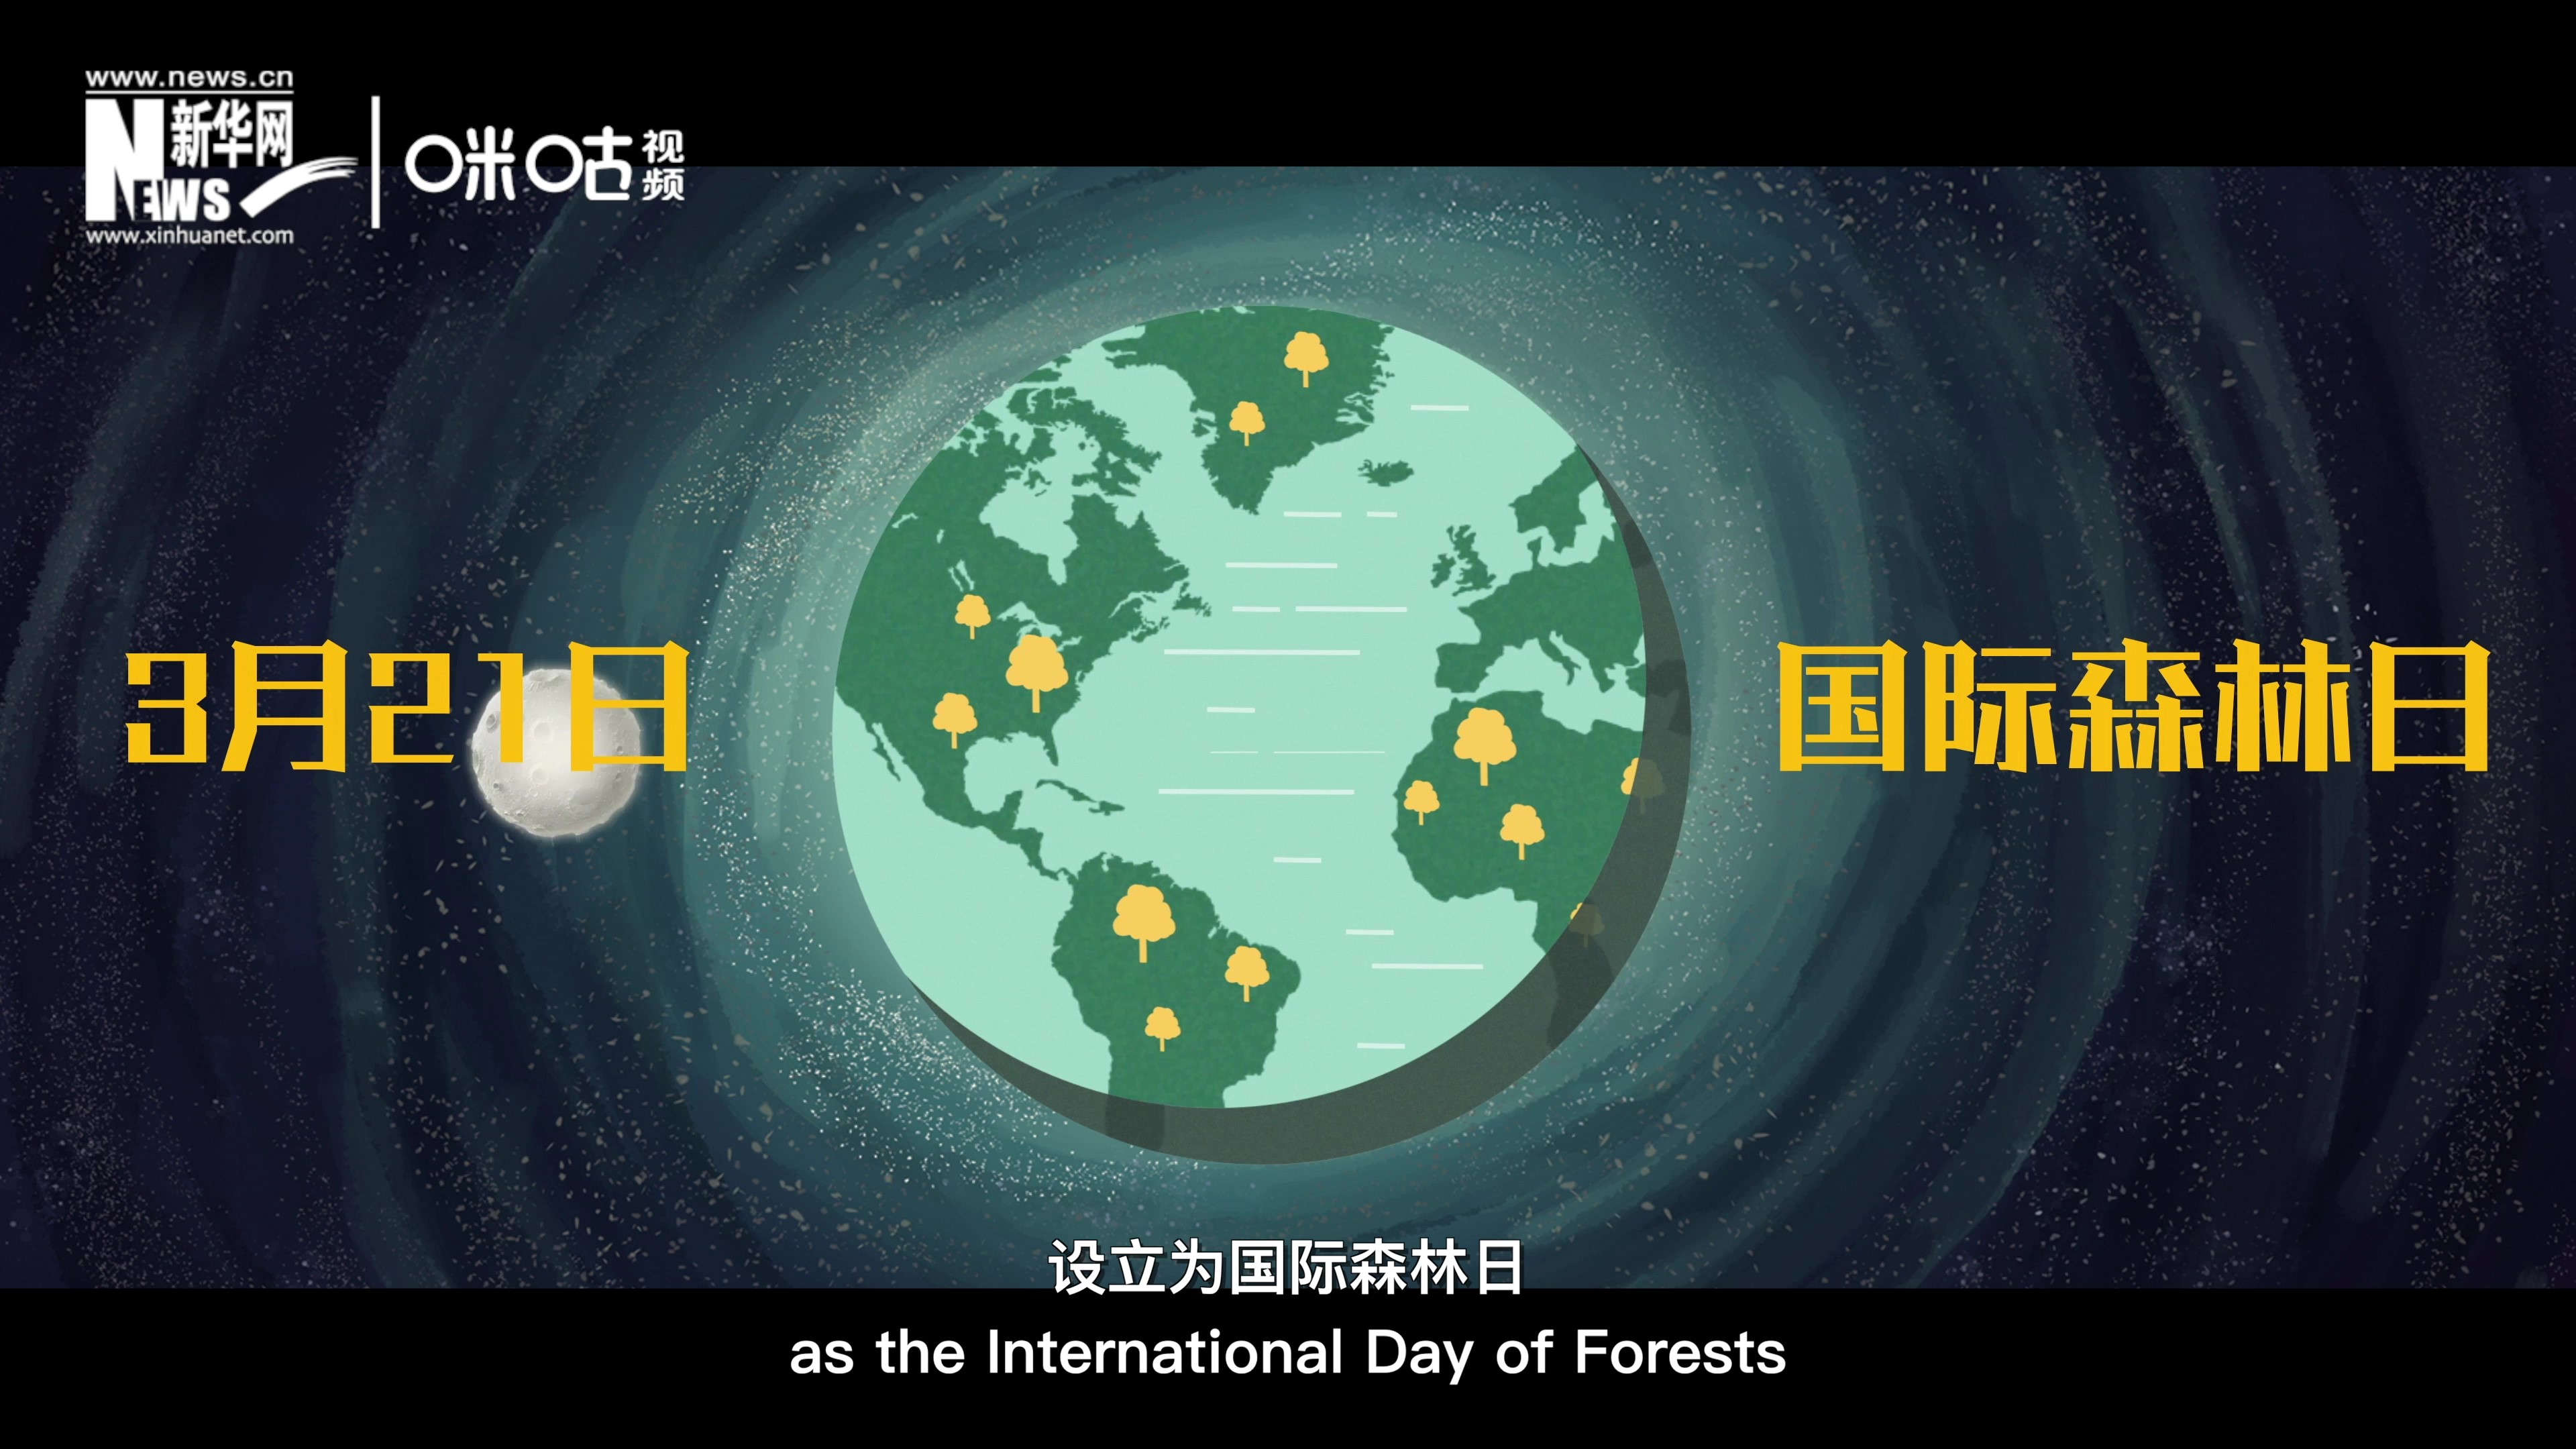 2012年聯合國將每年的3月21日設為國際森林日